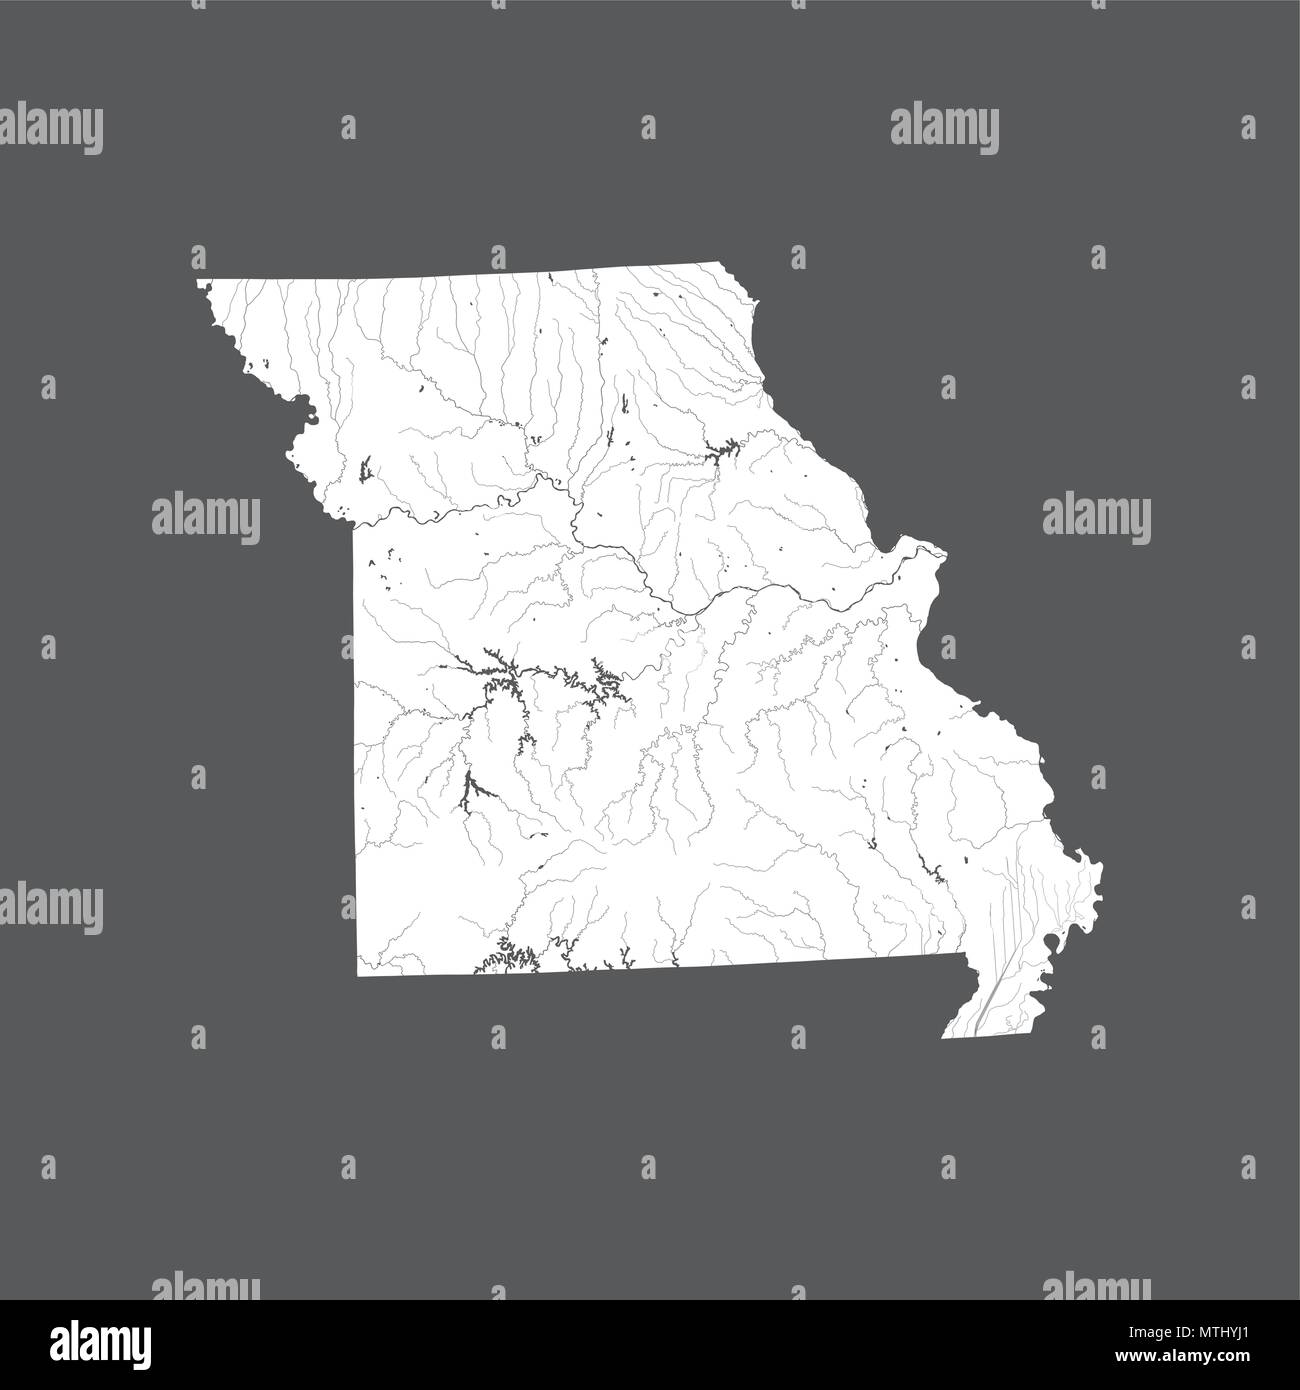 Les états américains - Carte du Missouri. Fait main. Les rivières et lacs sont indiqués. Merci de regarder mes autres images de la série cartographique - ils sont tous très détail Illustration de Vecteur